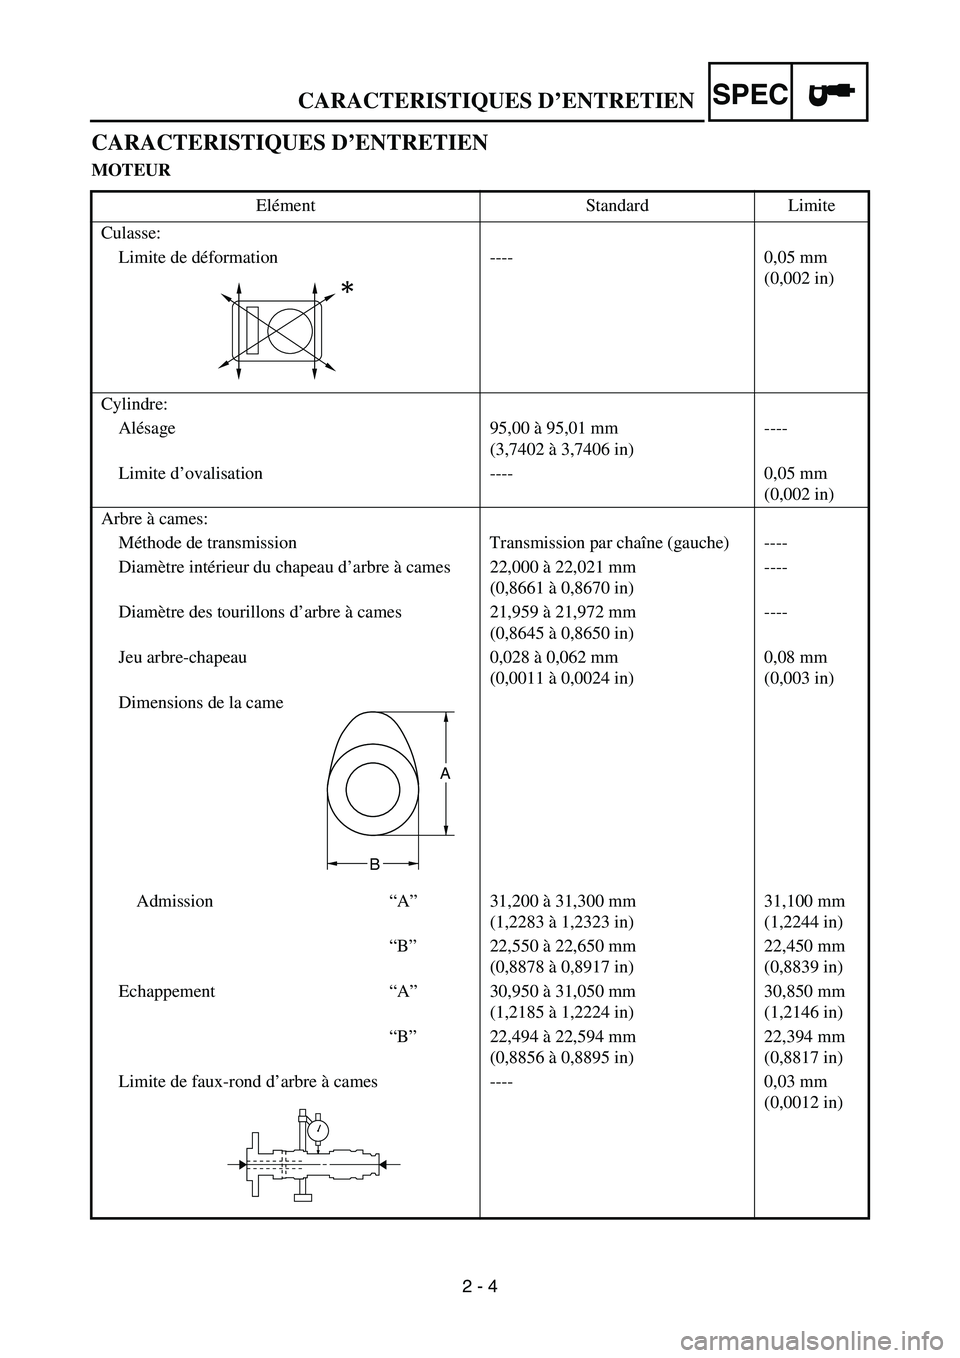 YAMAHA YZ450F 2006  Owners Manual 2 - 4
SPECCARACTERISTIQUES D’ENTRETIEN
CARACTERISTIQUES D’ENTRETIEN
MOTEUR
Elément Standard Limite
Culasse:
Limite de déformation ---- 0,05 mm 
(0,002 in)
Cylindre:
Alésage 95,00 à 95,01 mm
(3